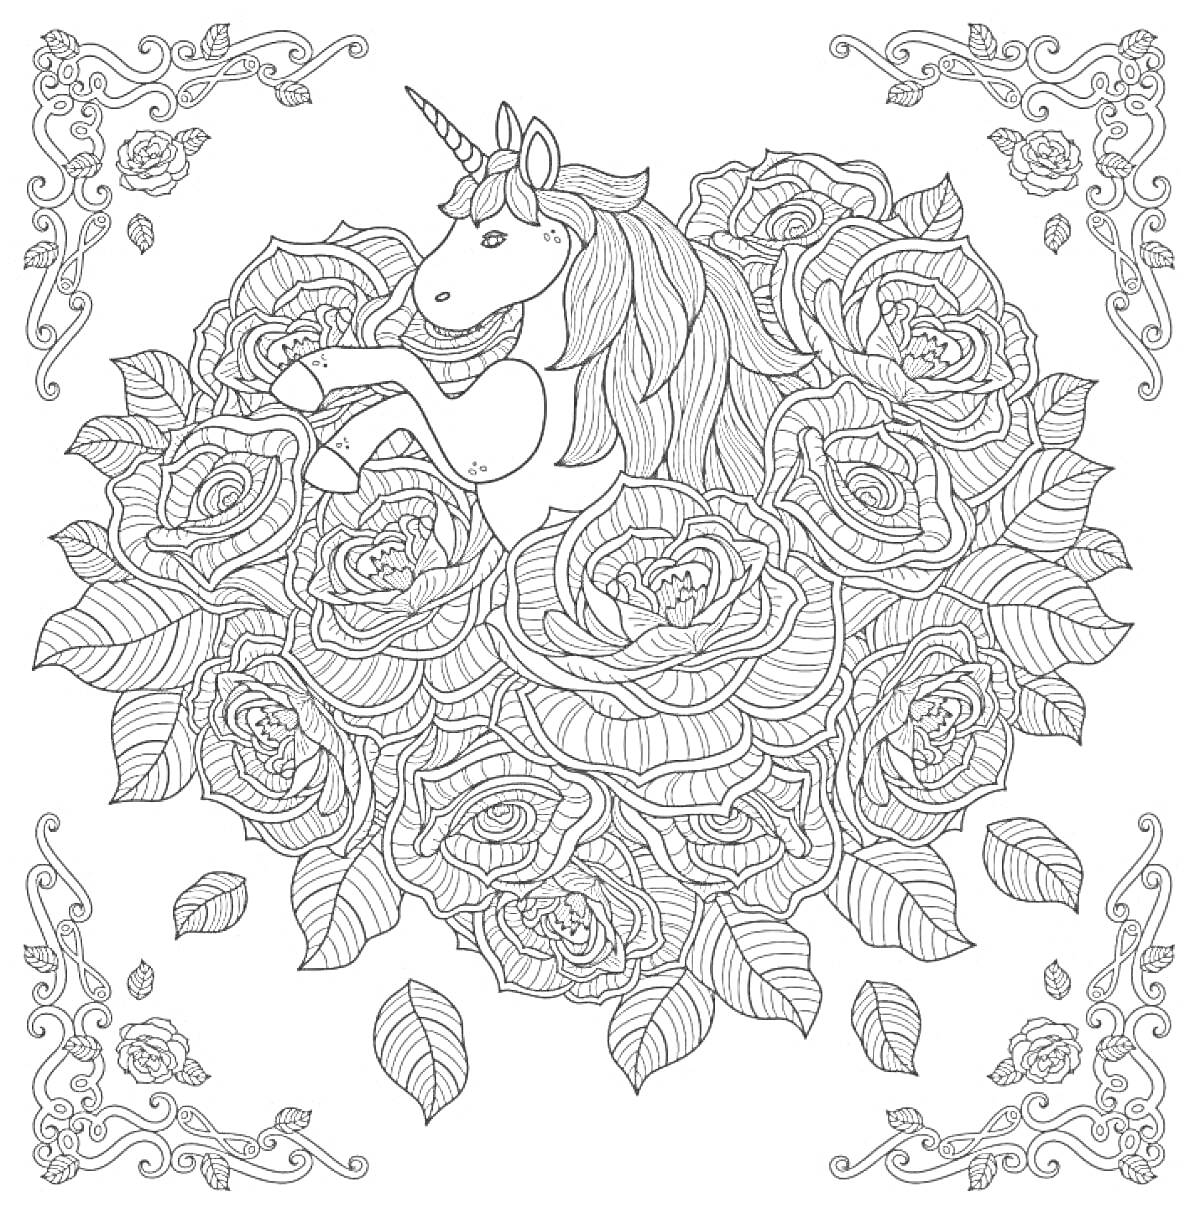 Раскраска Единорог среди роз в декоративной рамке с цветочными узорами